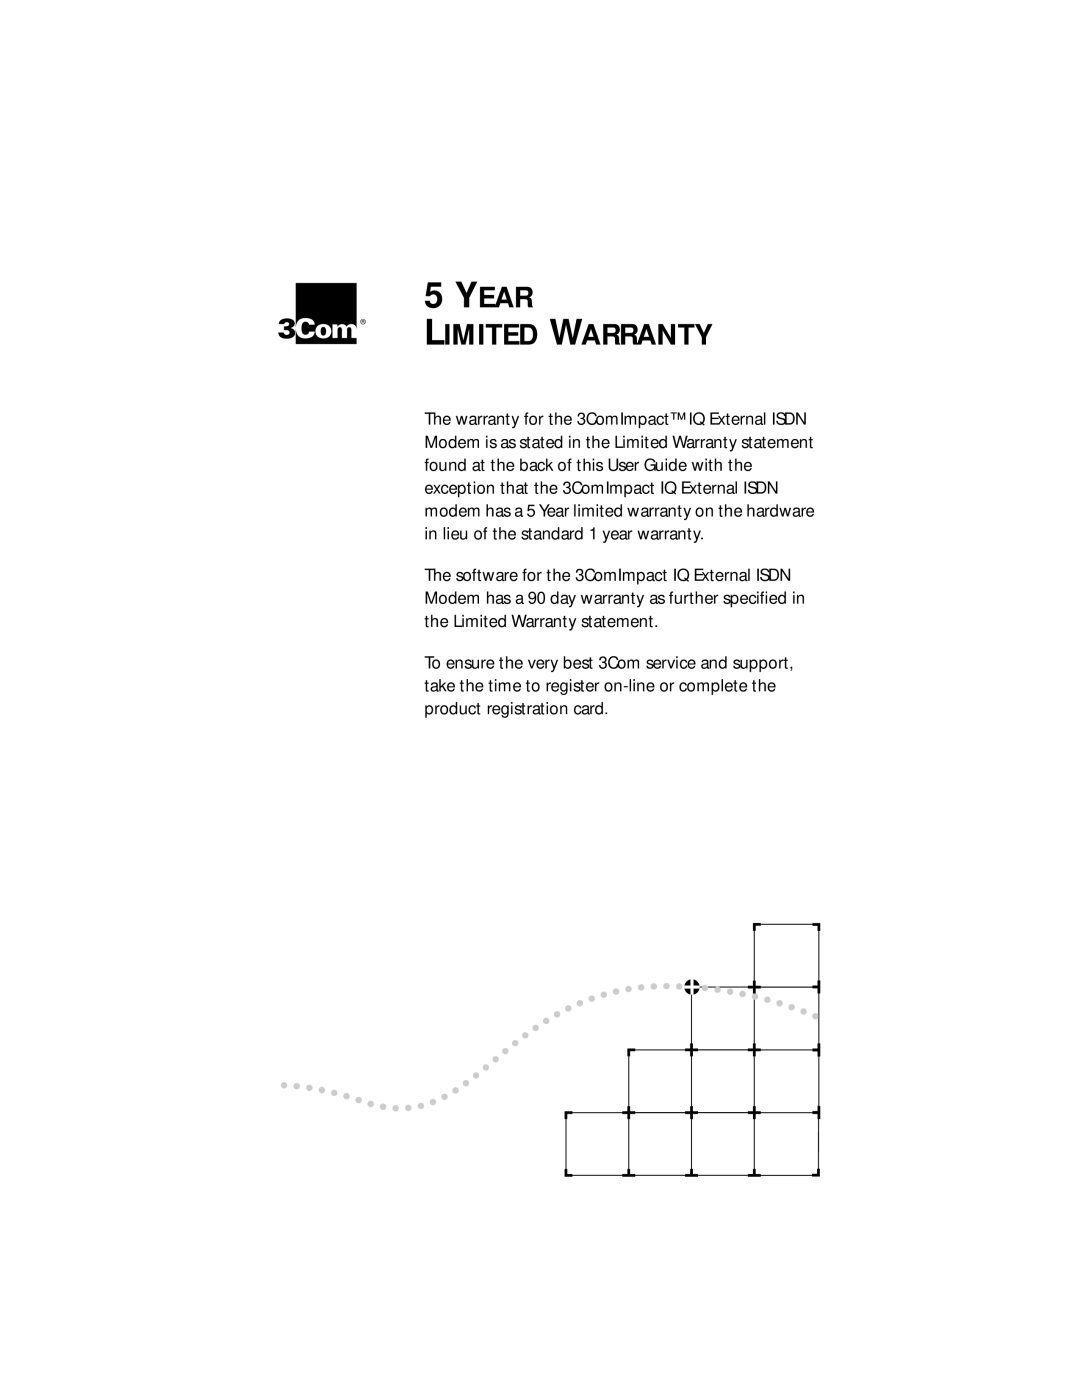 3Com 3C882 manual Year Limited Warranty 